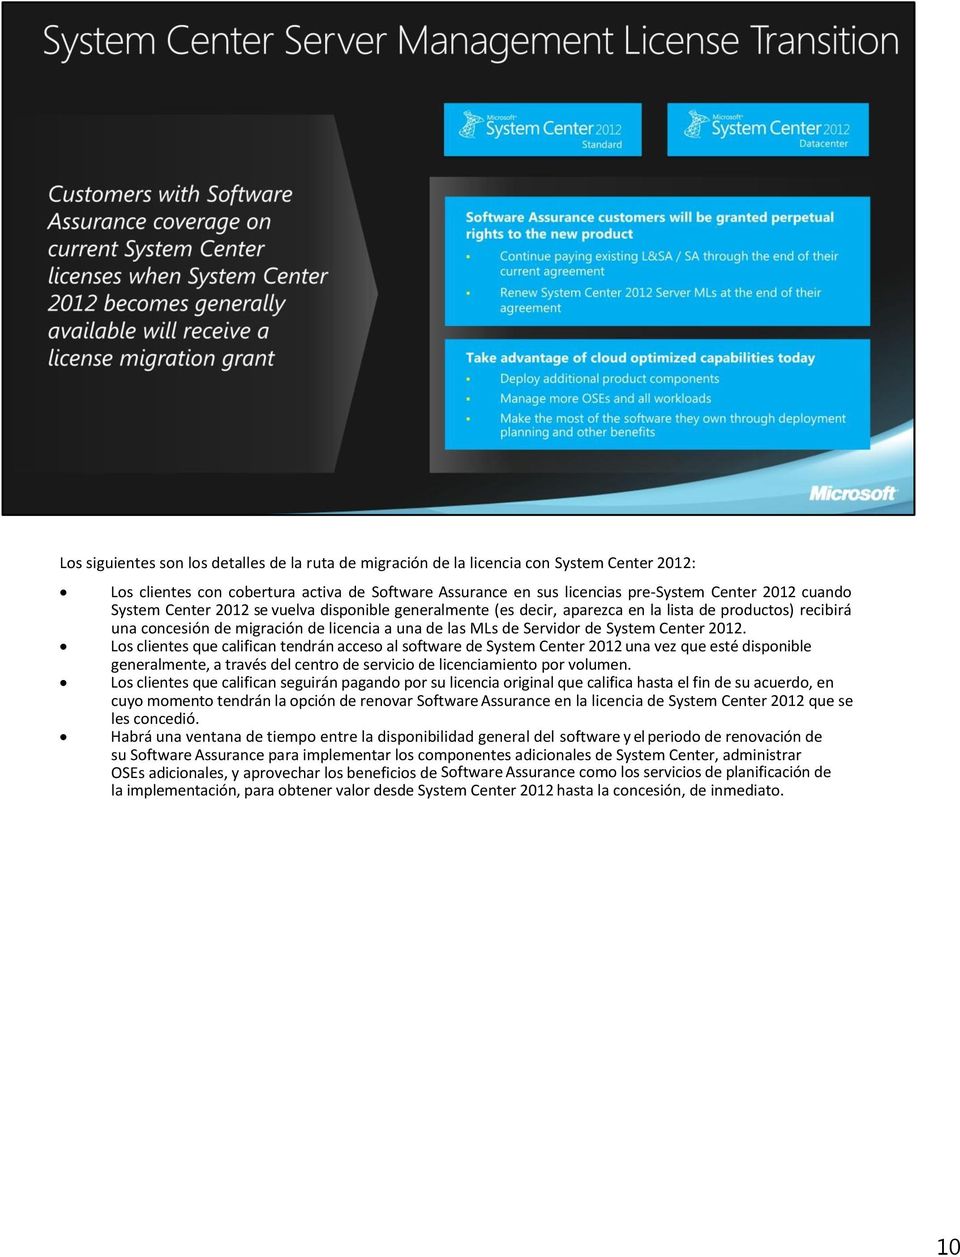 Los clientes que califican tendrán acceso al software de System Center 2012 una vez que esté disponible generalmente, a través del centro de servicio de licenciamiento por volumen.